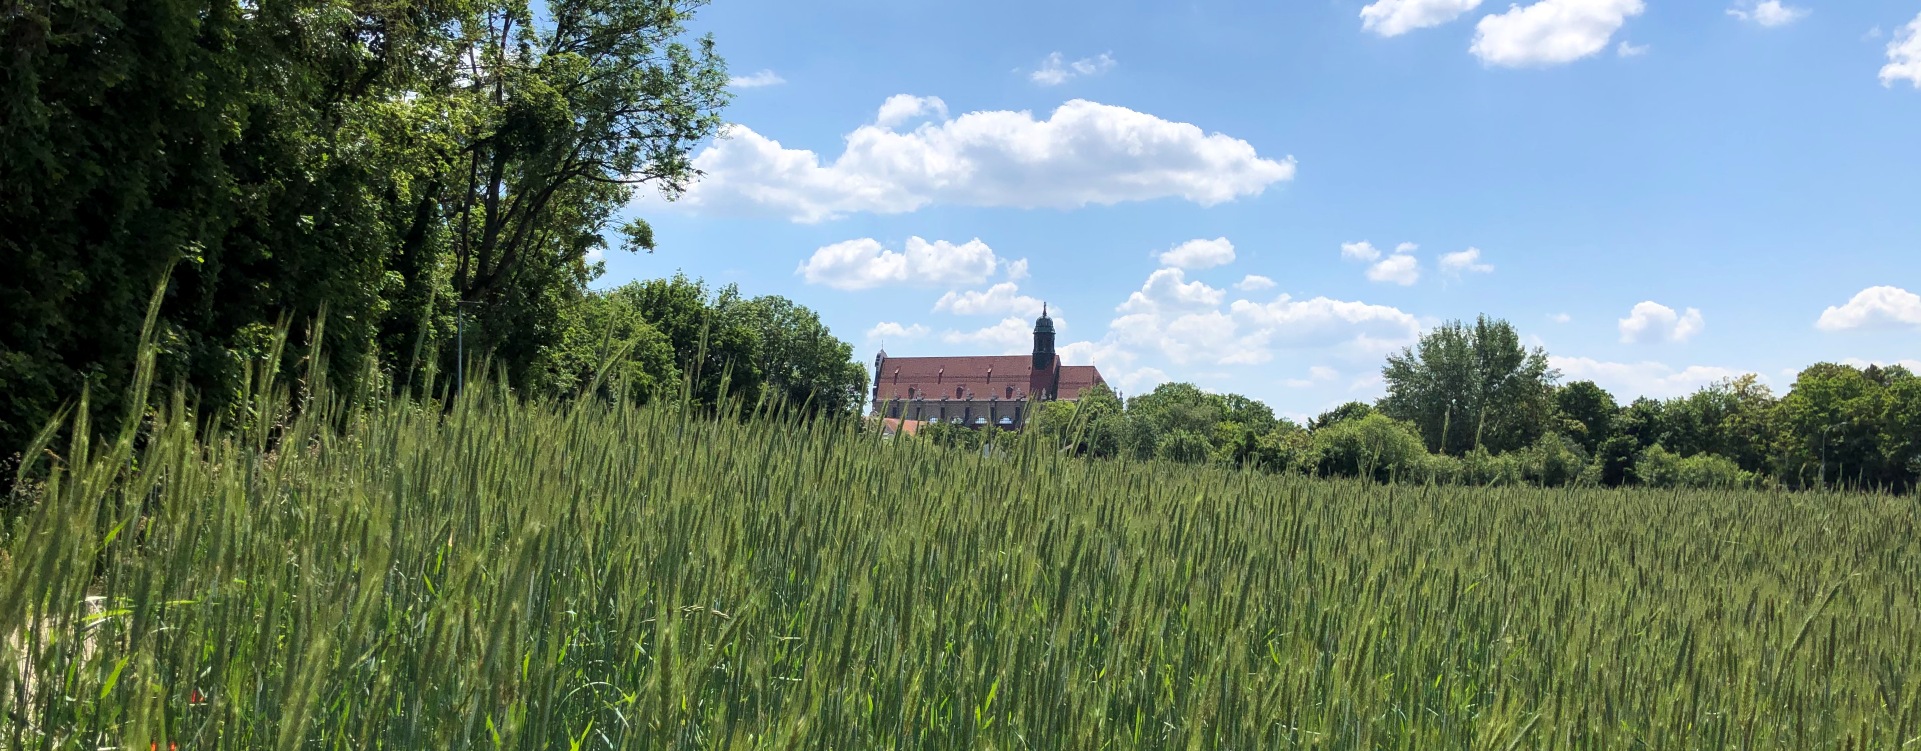 Basilika St. Anna von der Osterwiese aus der Ferne zu sehen